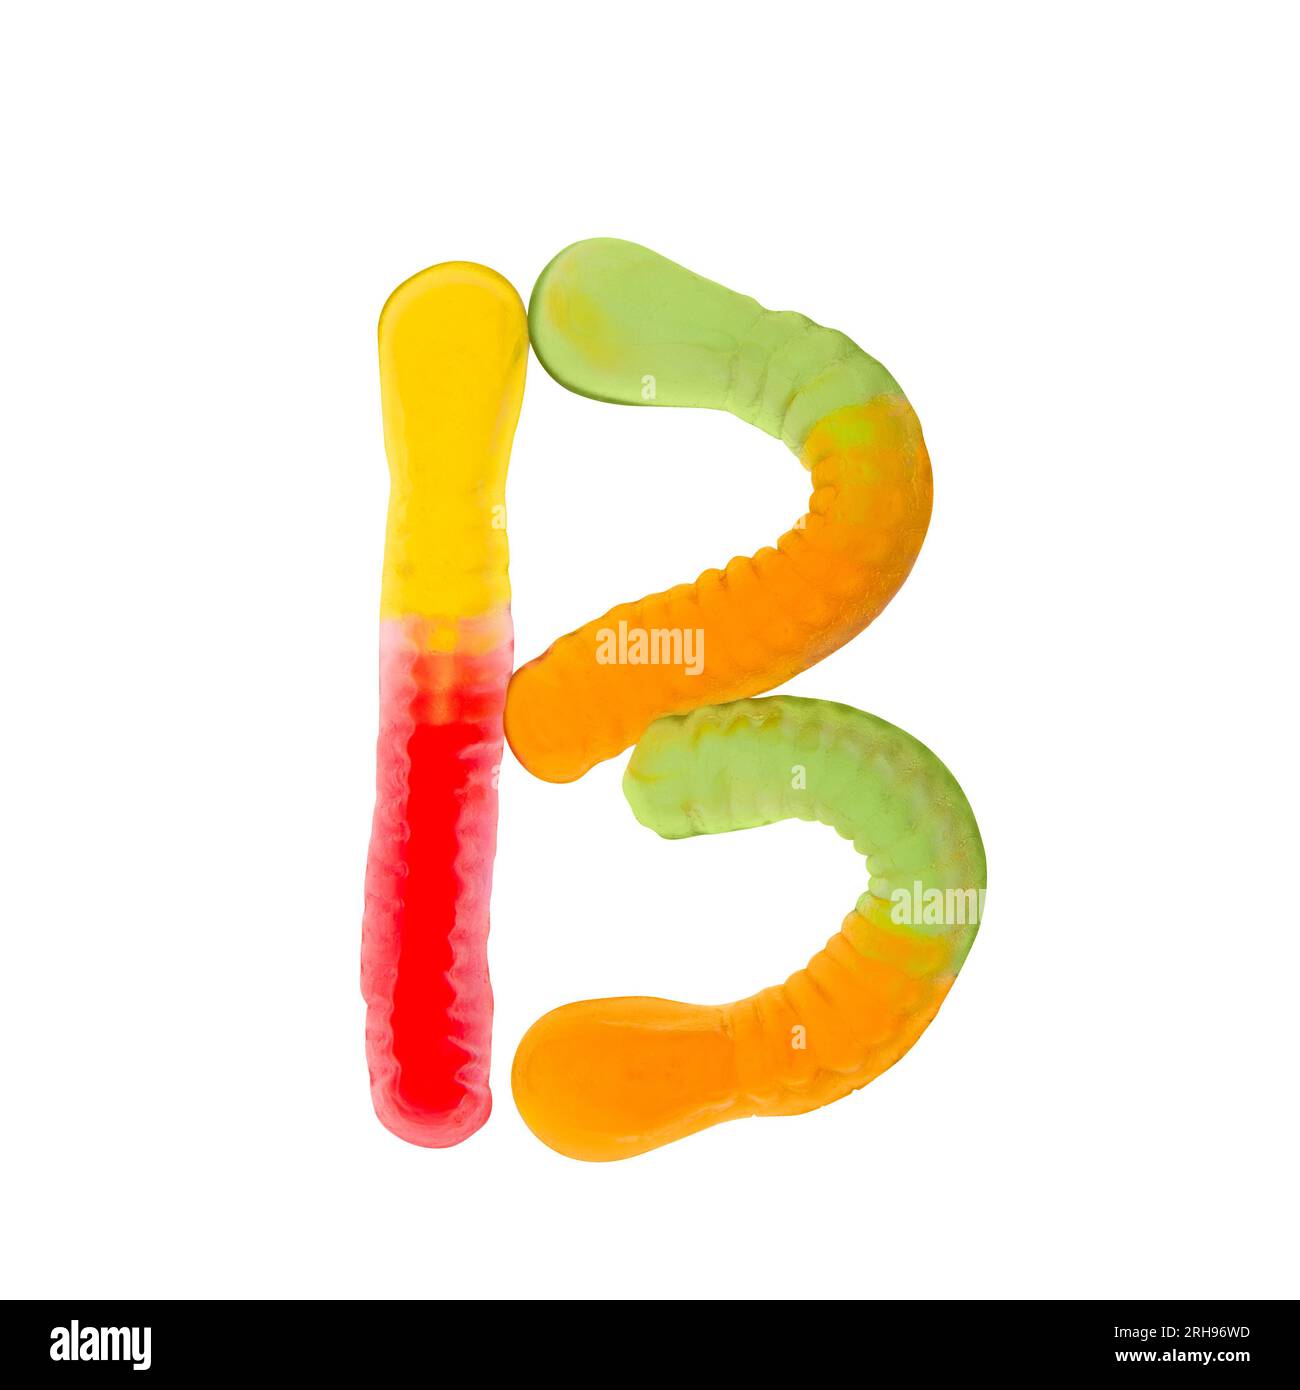 Lettre B faite de vers gummi multicolores et isolée sur fond blanc pur. Concept d'alphabet alimentaire. Une lettre de l'ensemble de la police des aliments sucrés facile Banque D'Images